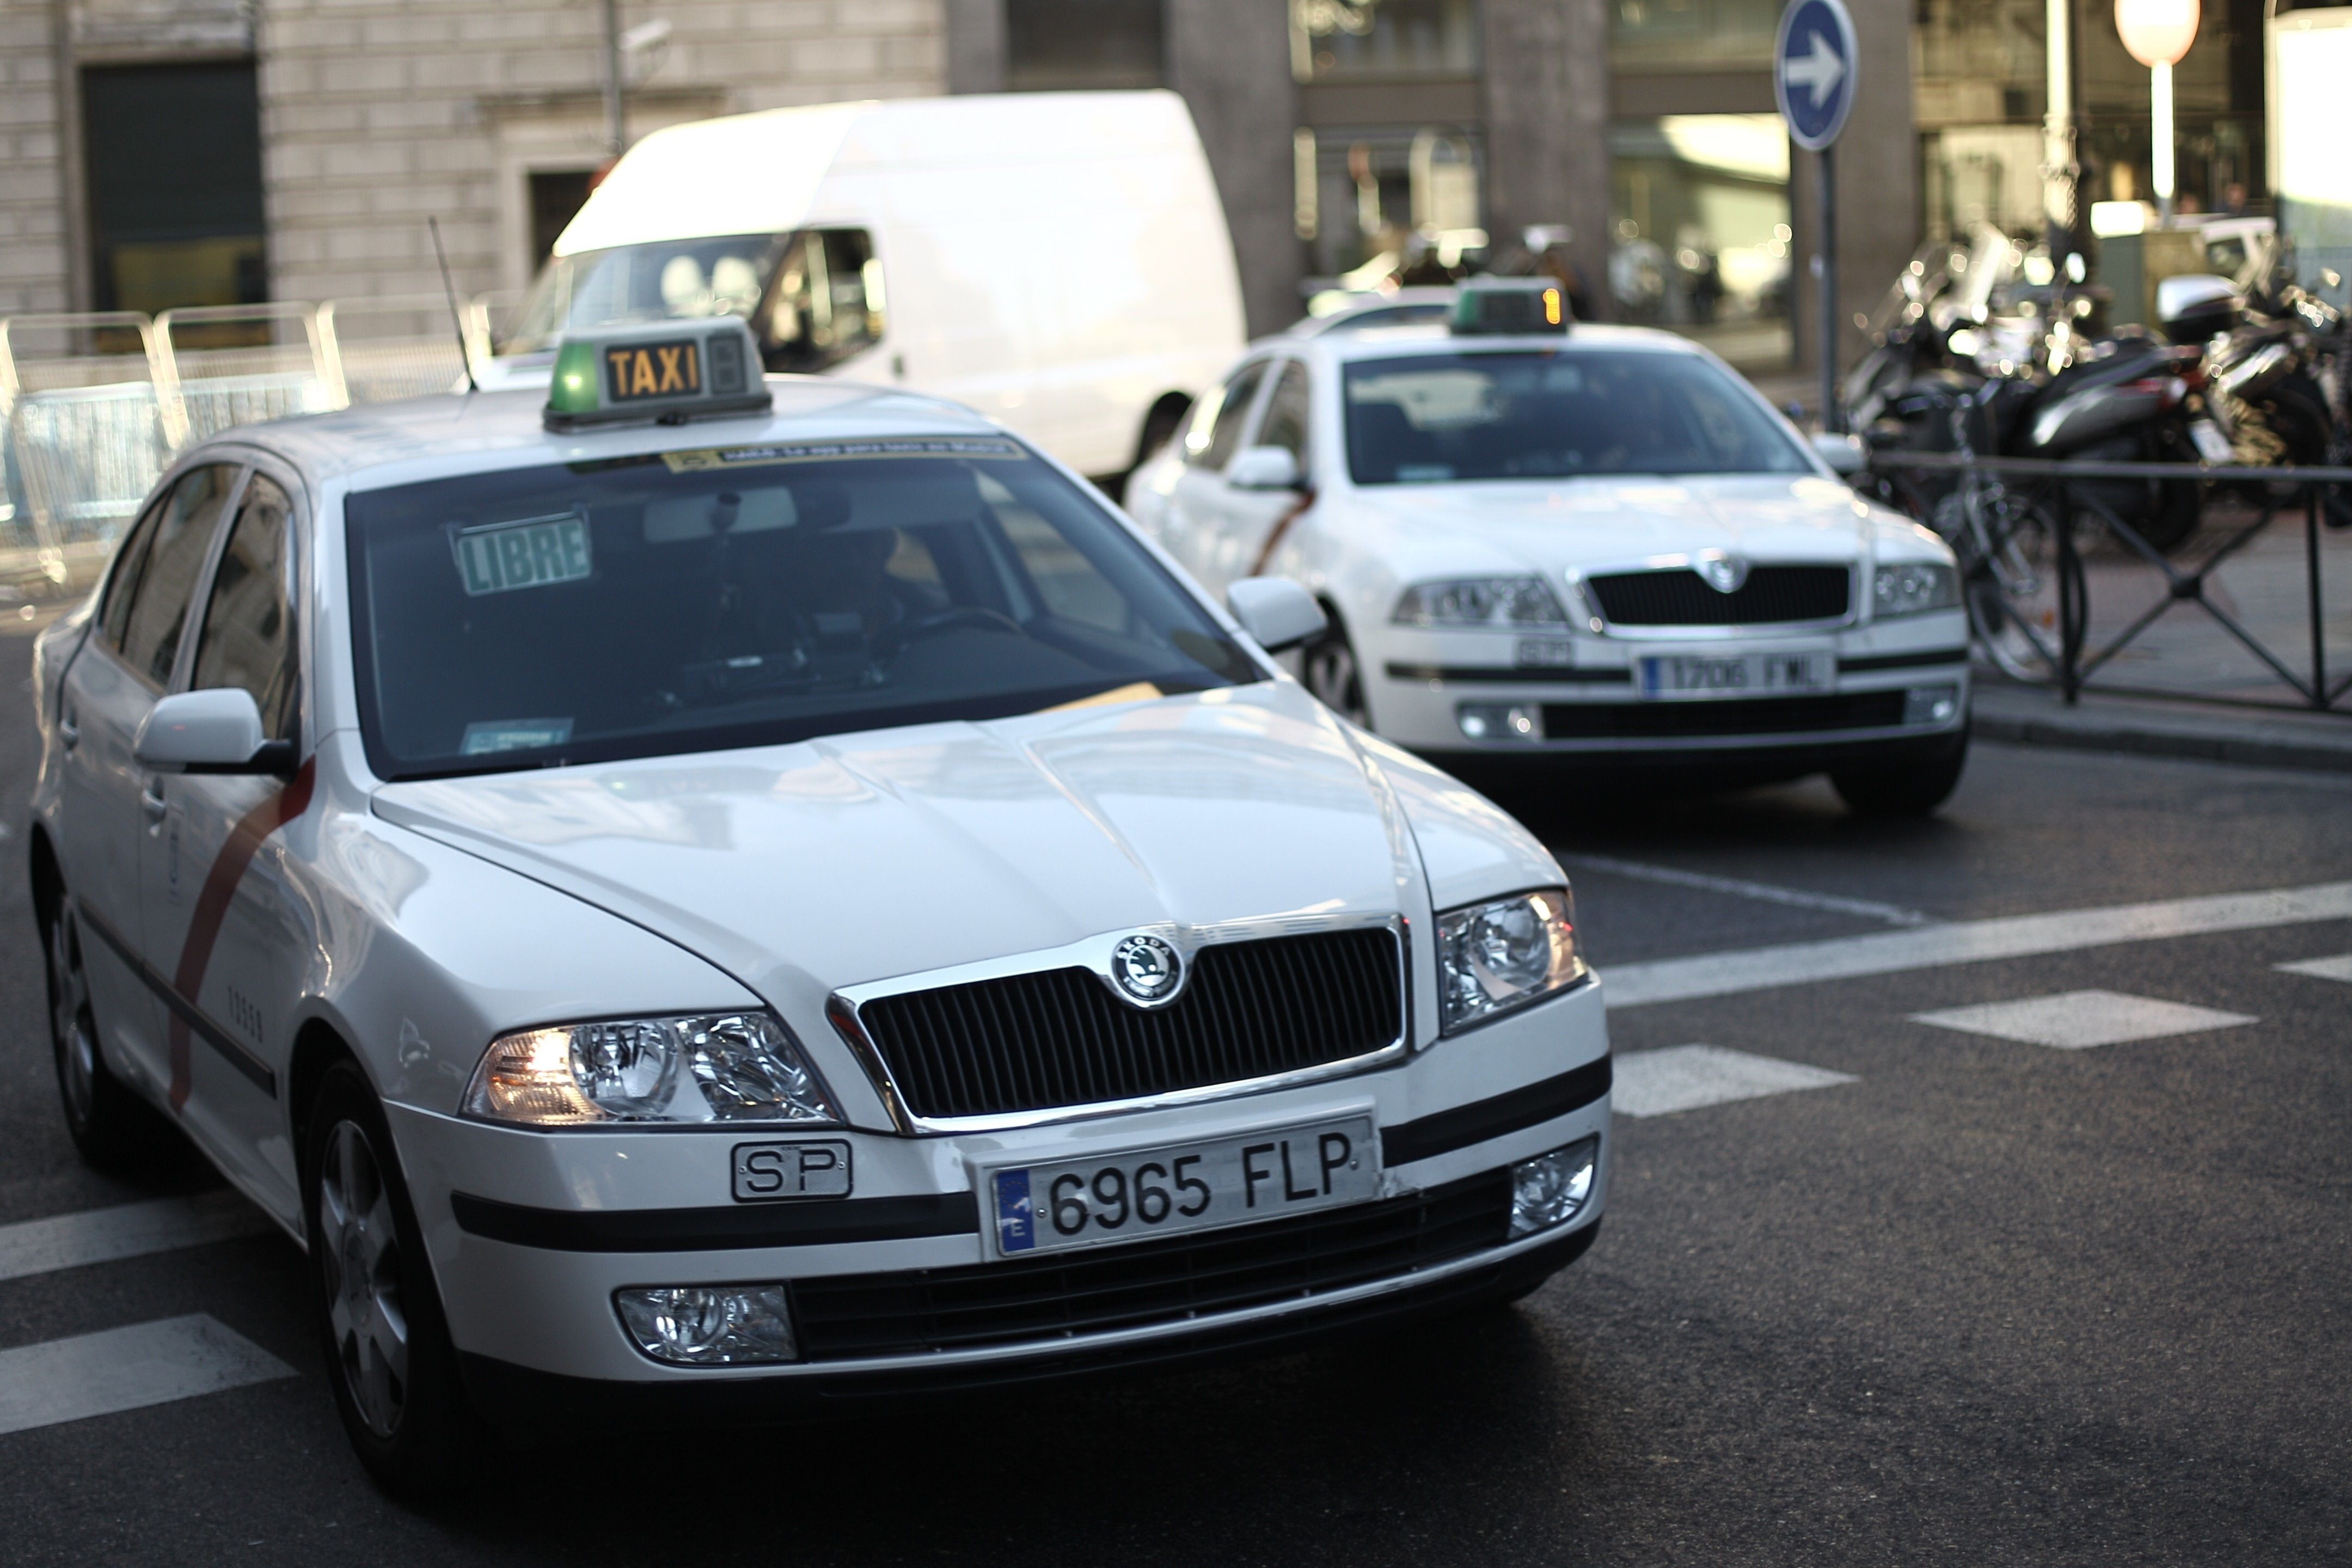 España, el país europeo en el que más objetos se olvidan en los taxis